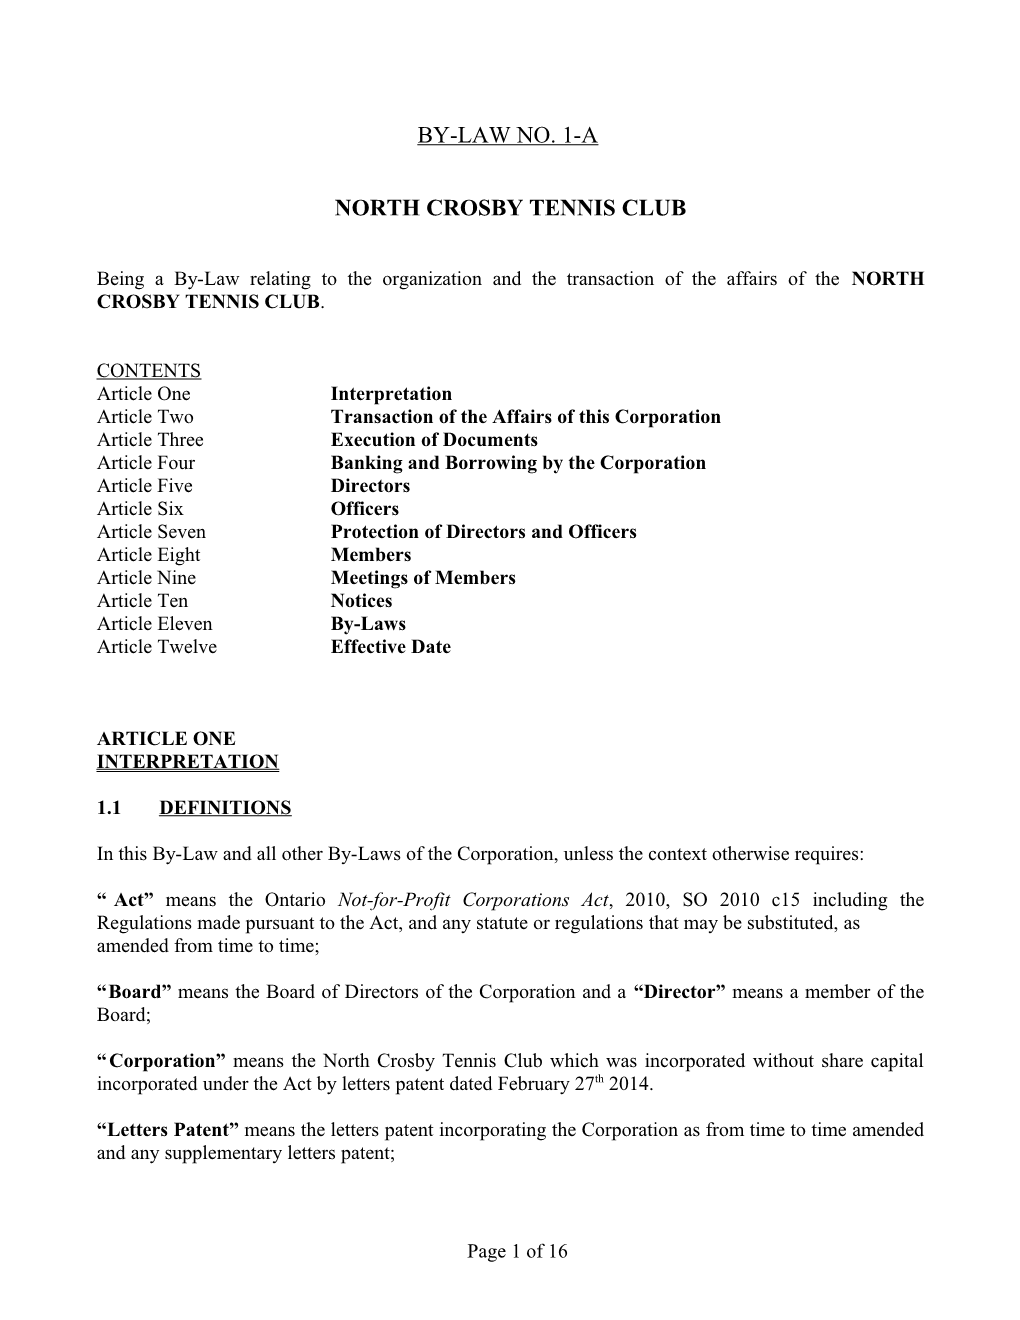 North Crosby Tennis Club